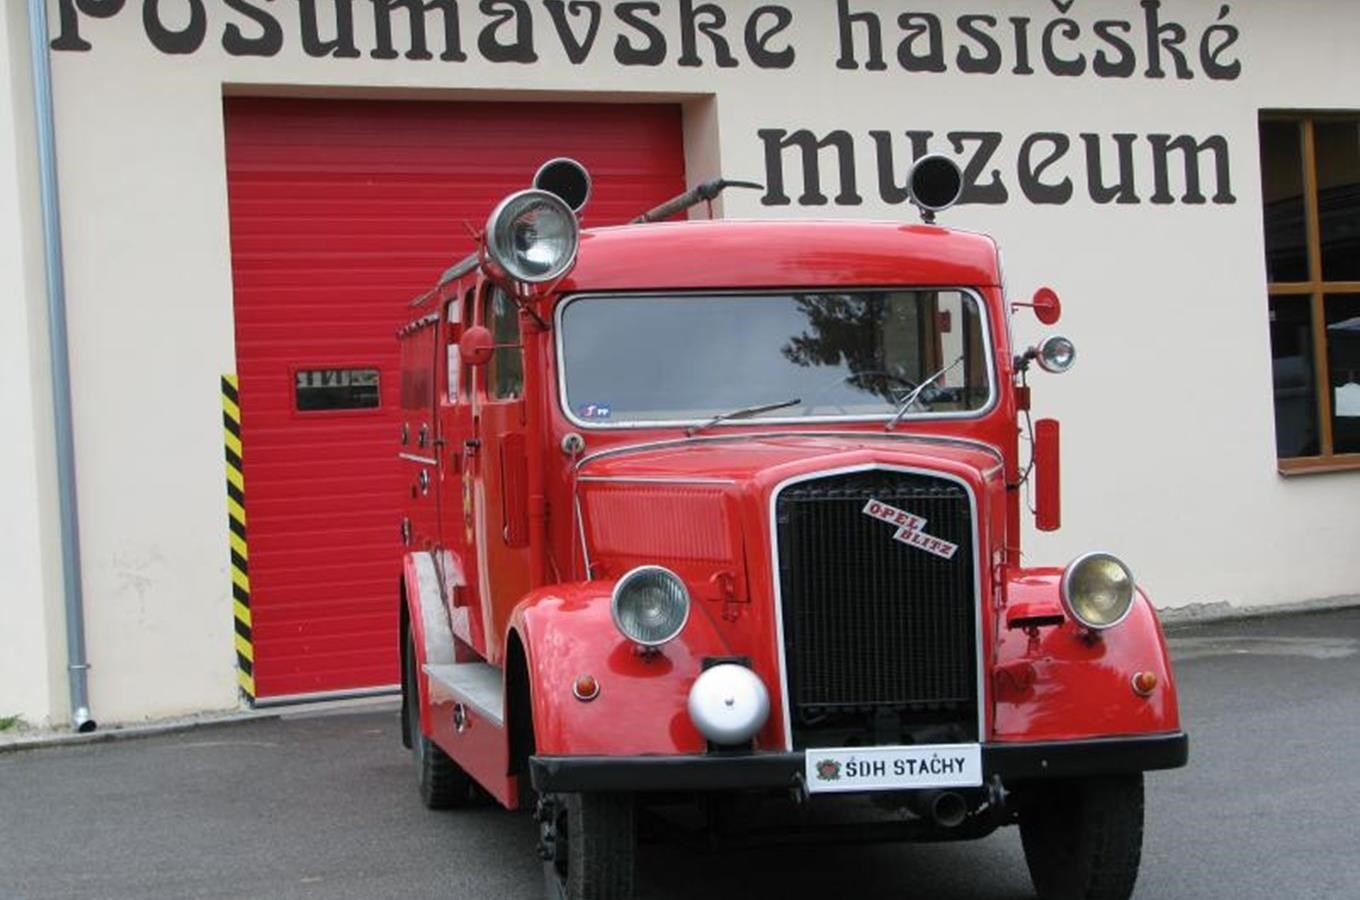 Pošumavské hasičské muzeum ve Stachách